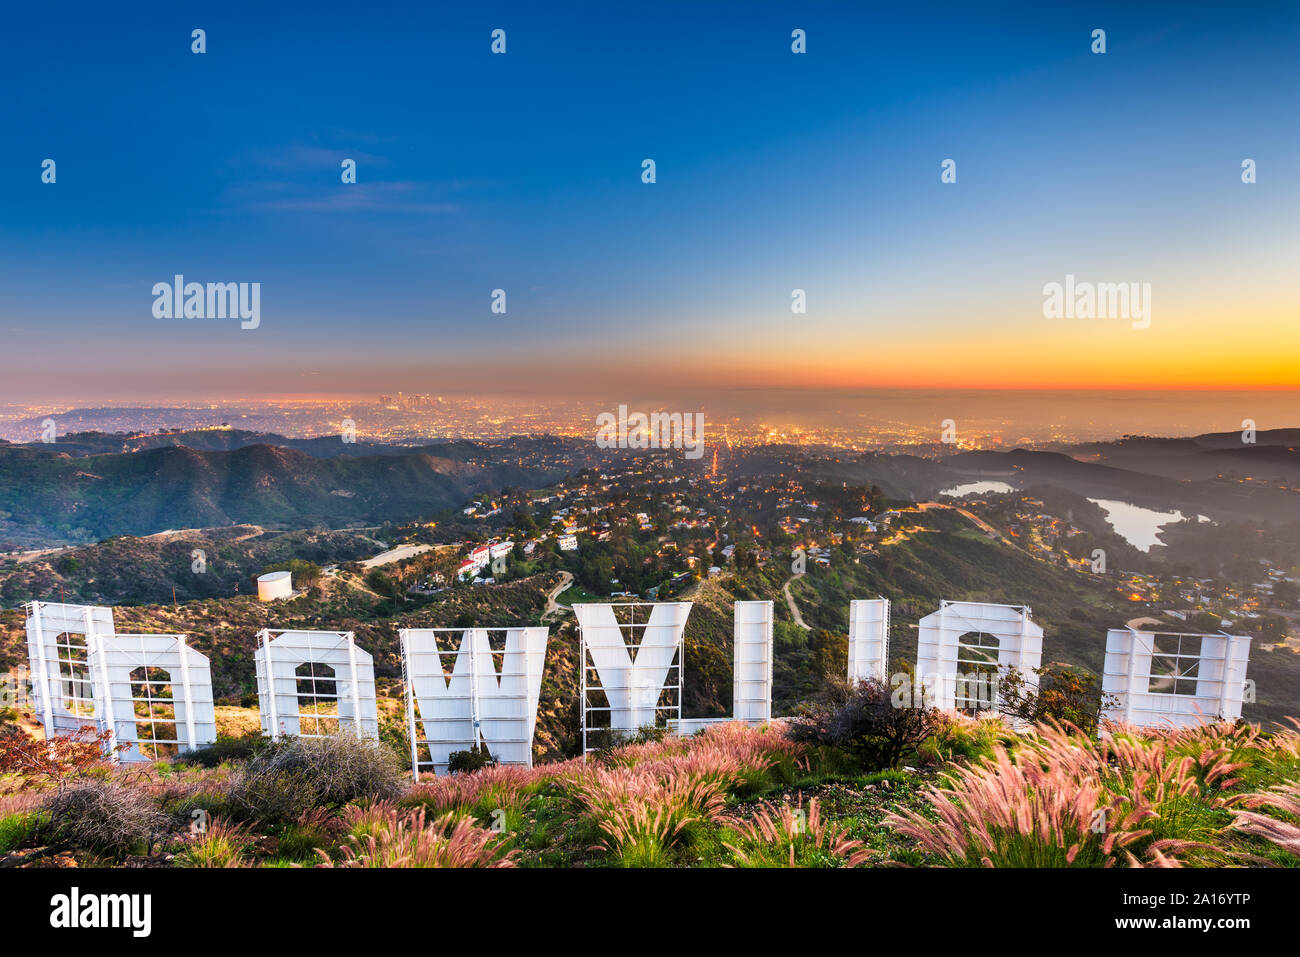 LOS ANGELES, California - 29 de febrero de 2016: el cartel de Hollywood con vistas a Los Ángeles. La icónica señal fue creada originalmente en 1923. Foto de stock